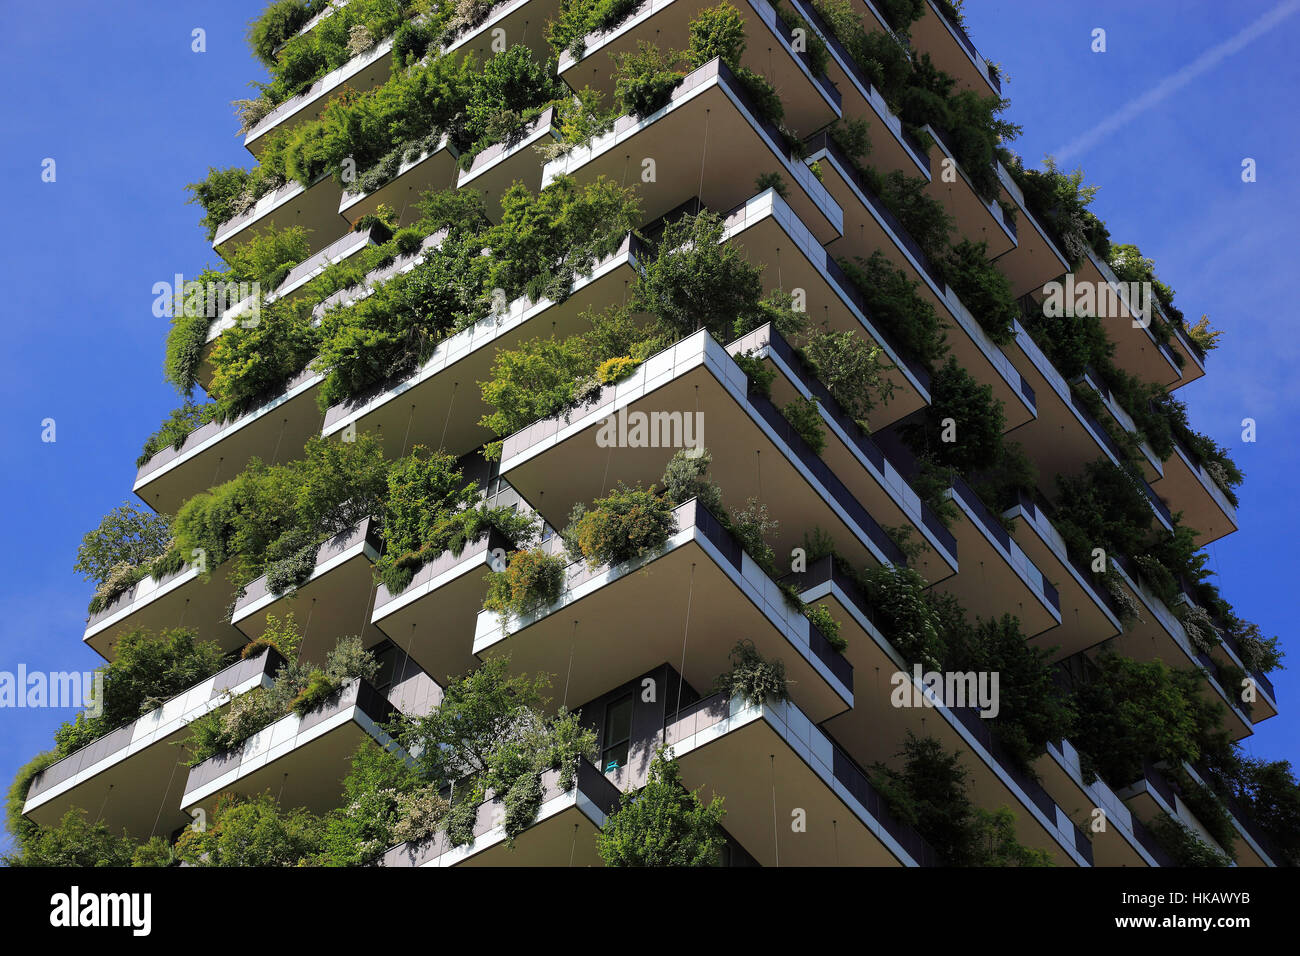 Italien, Mailand, Projekt, Bosco Verticale, vertikale Wald, Hochhaus Haus  mit Bäumen, Sträuchern und Hecken Stockfotografie - Alamy